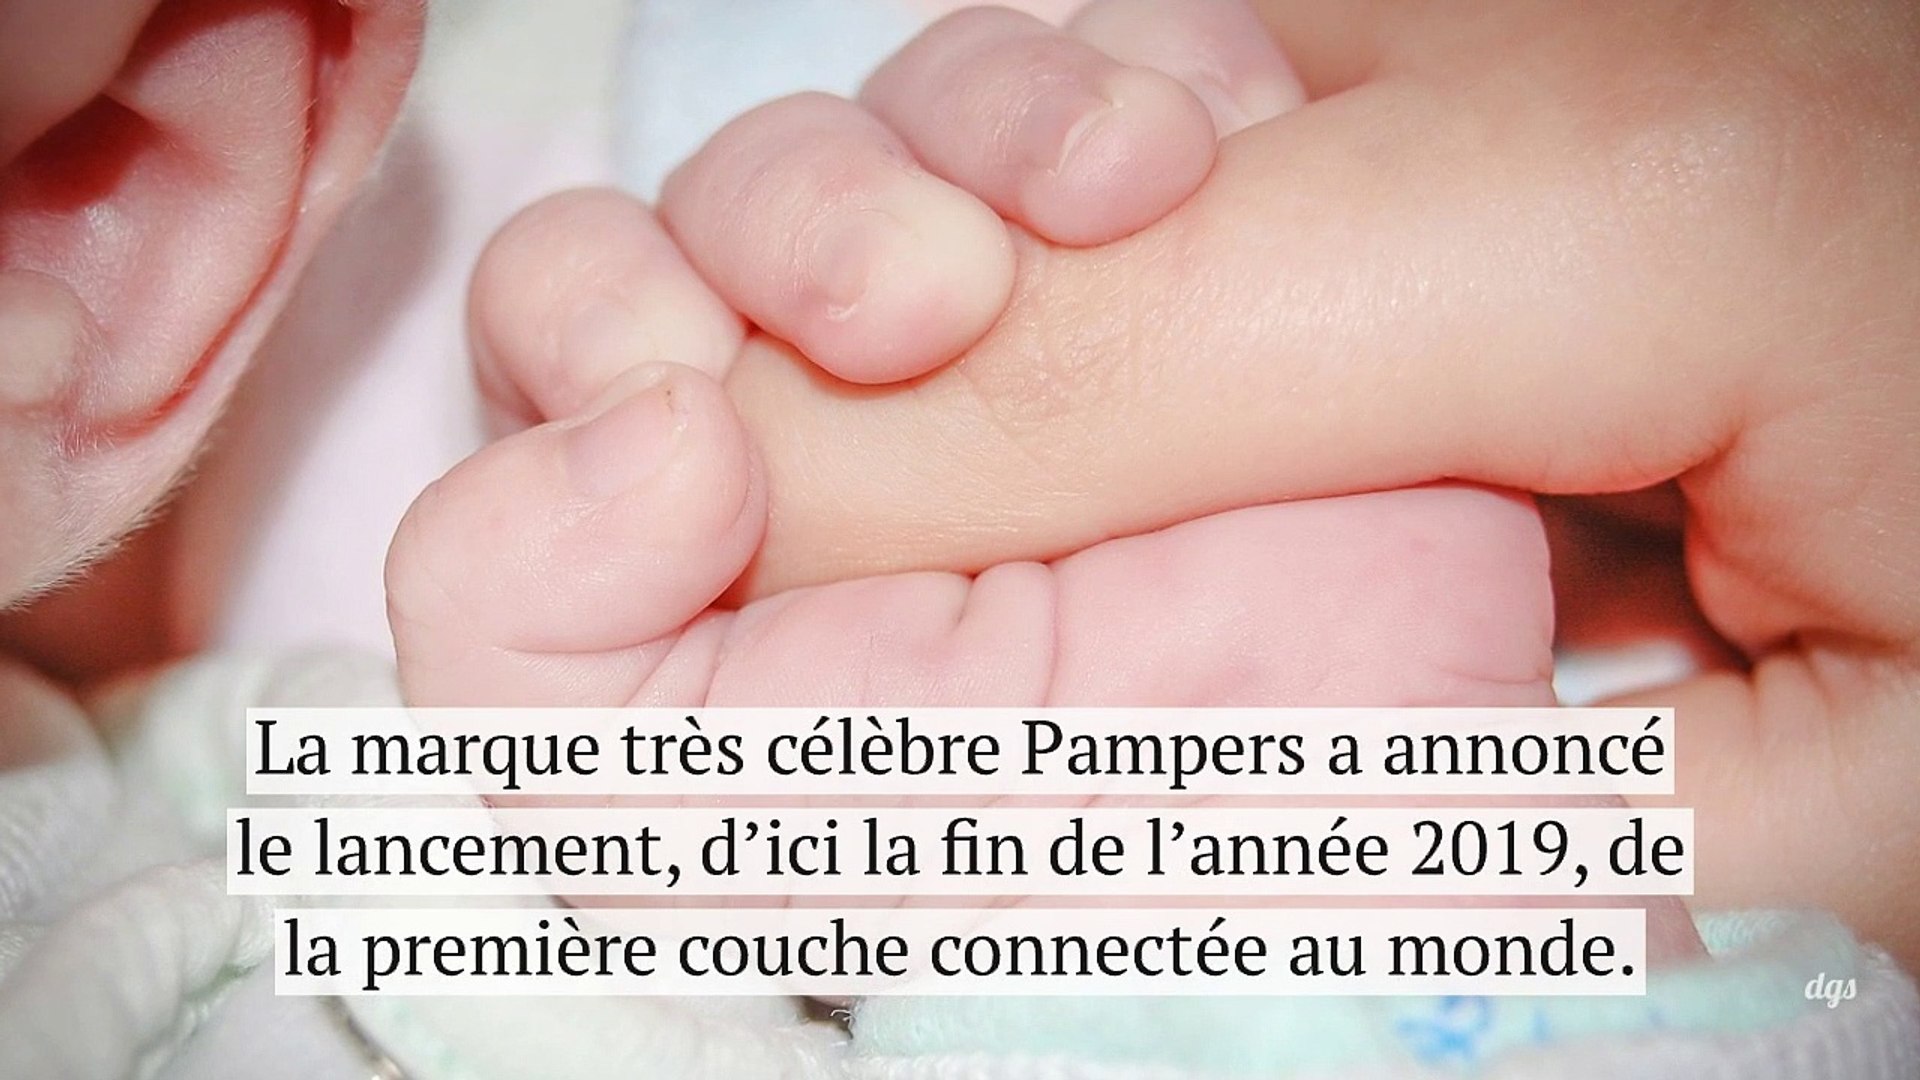 Pampers annonce sa première couche connectée… Mais nos bébés en avaient-ils  besoin ? - Vidéo Dailymotion